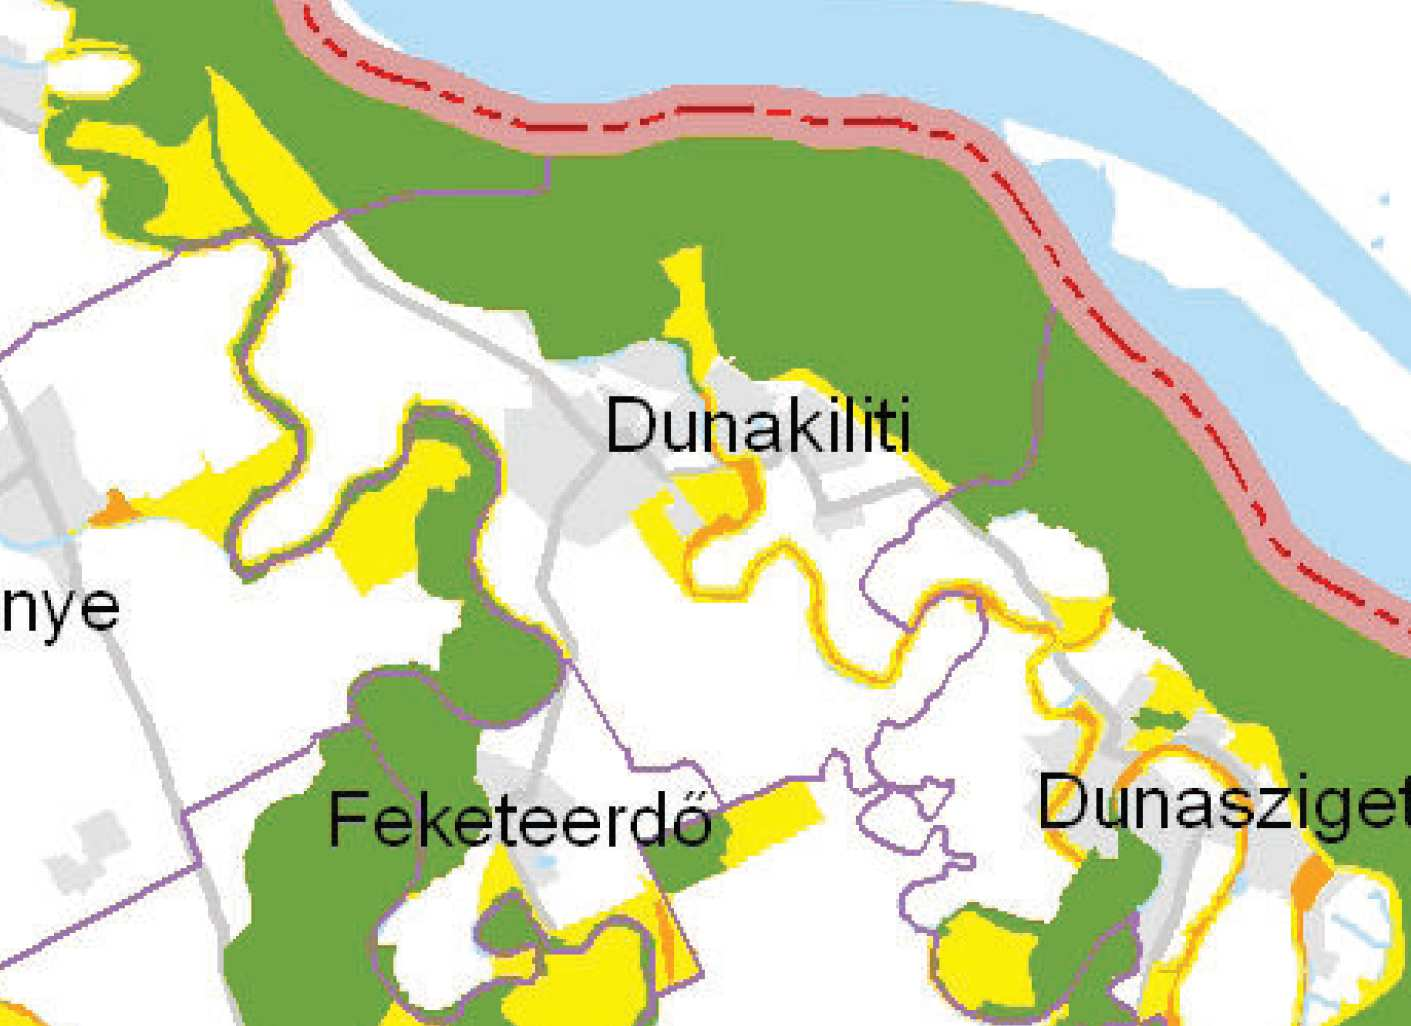 Dunakiliti